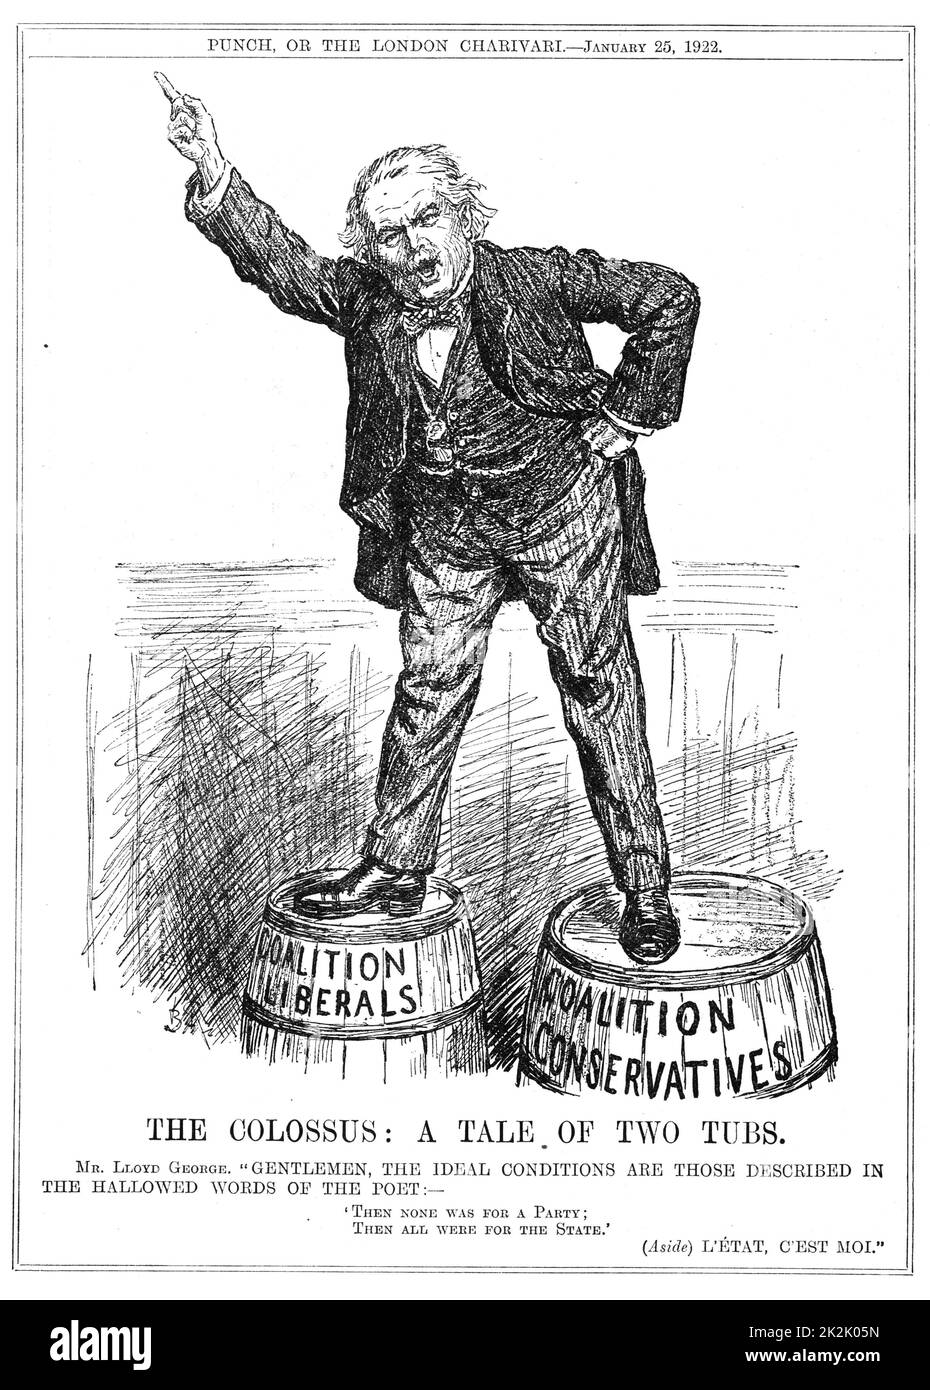 Der Koloss: Eine Geschichte von zwei Wannen' Split in der Britischen Liberalen Partei: Lloyd George, ständigen rittlings auf zwei Fässer, versuchen beide Fraktionen zu überzeugen, unter ihm zu vereinen. Cartoon von "Punch" London, 15. Januar 1922. Stockfoto